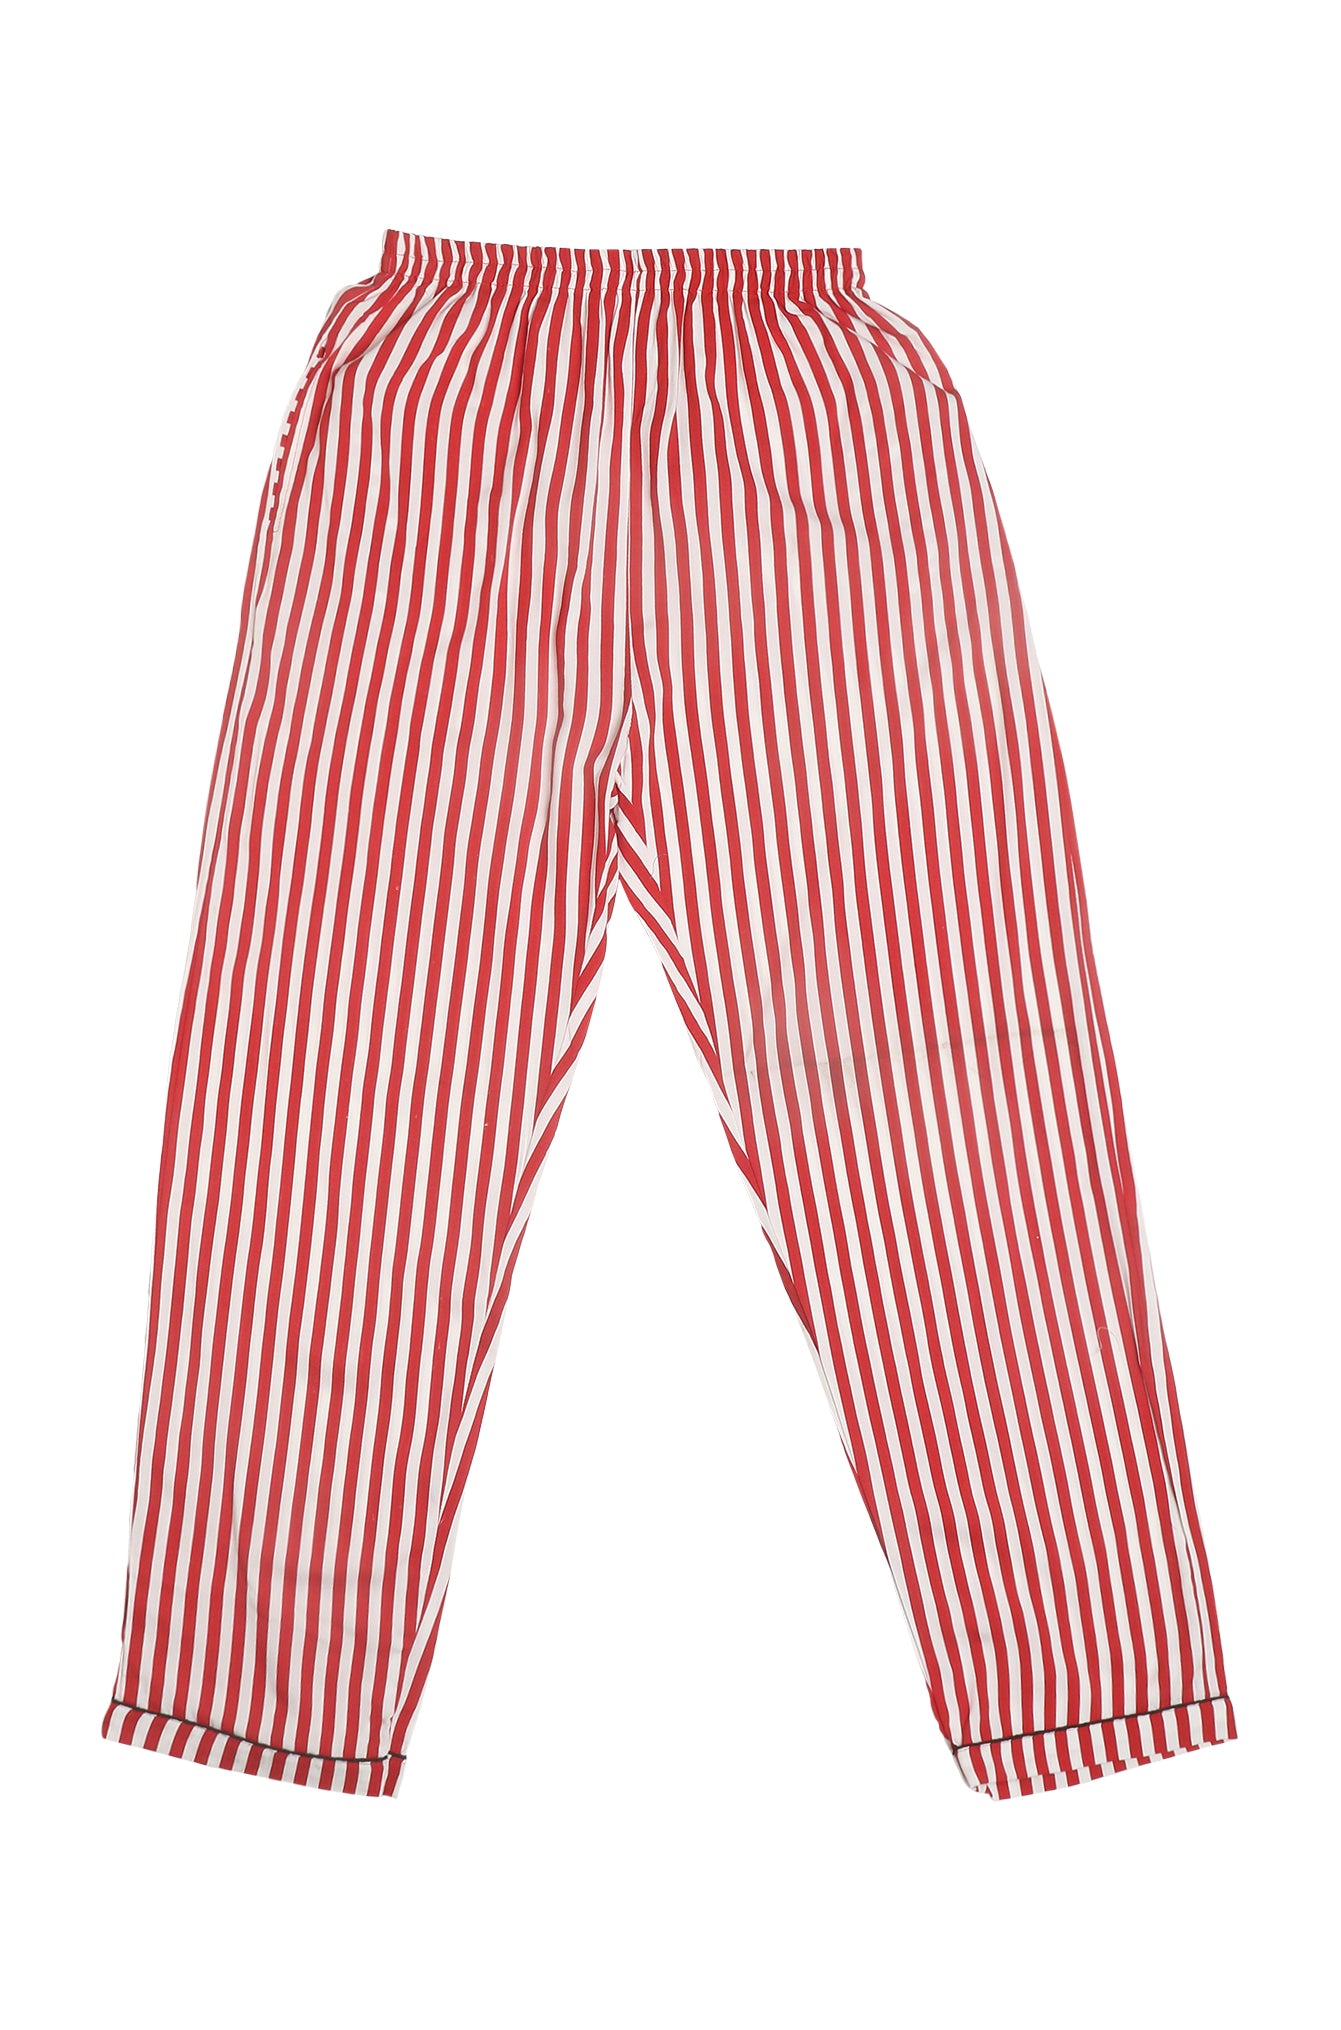 Single Pyjama (AK) [Buy 1 Get 1 Free]